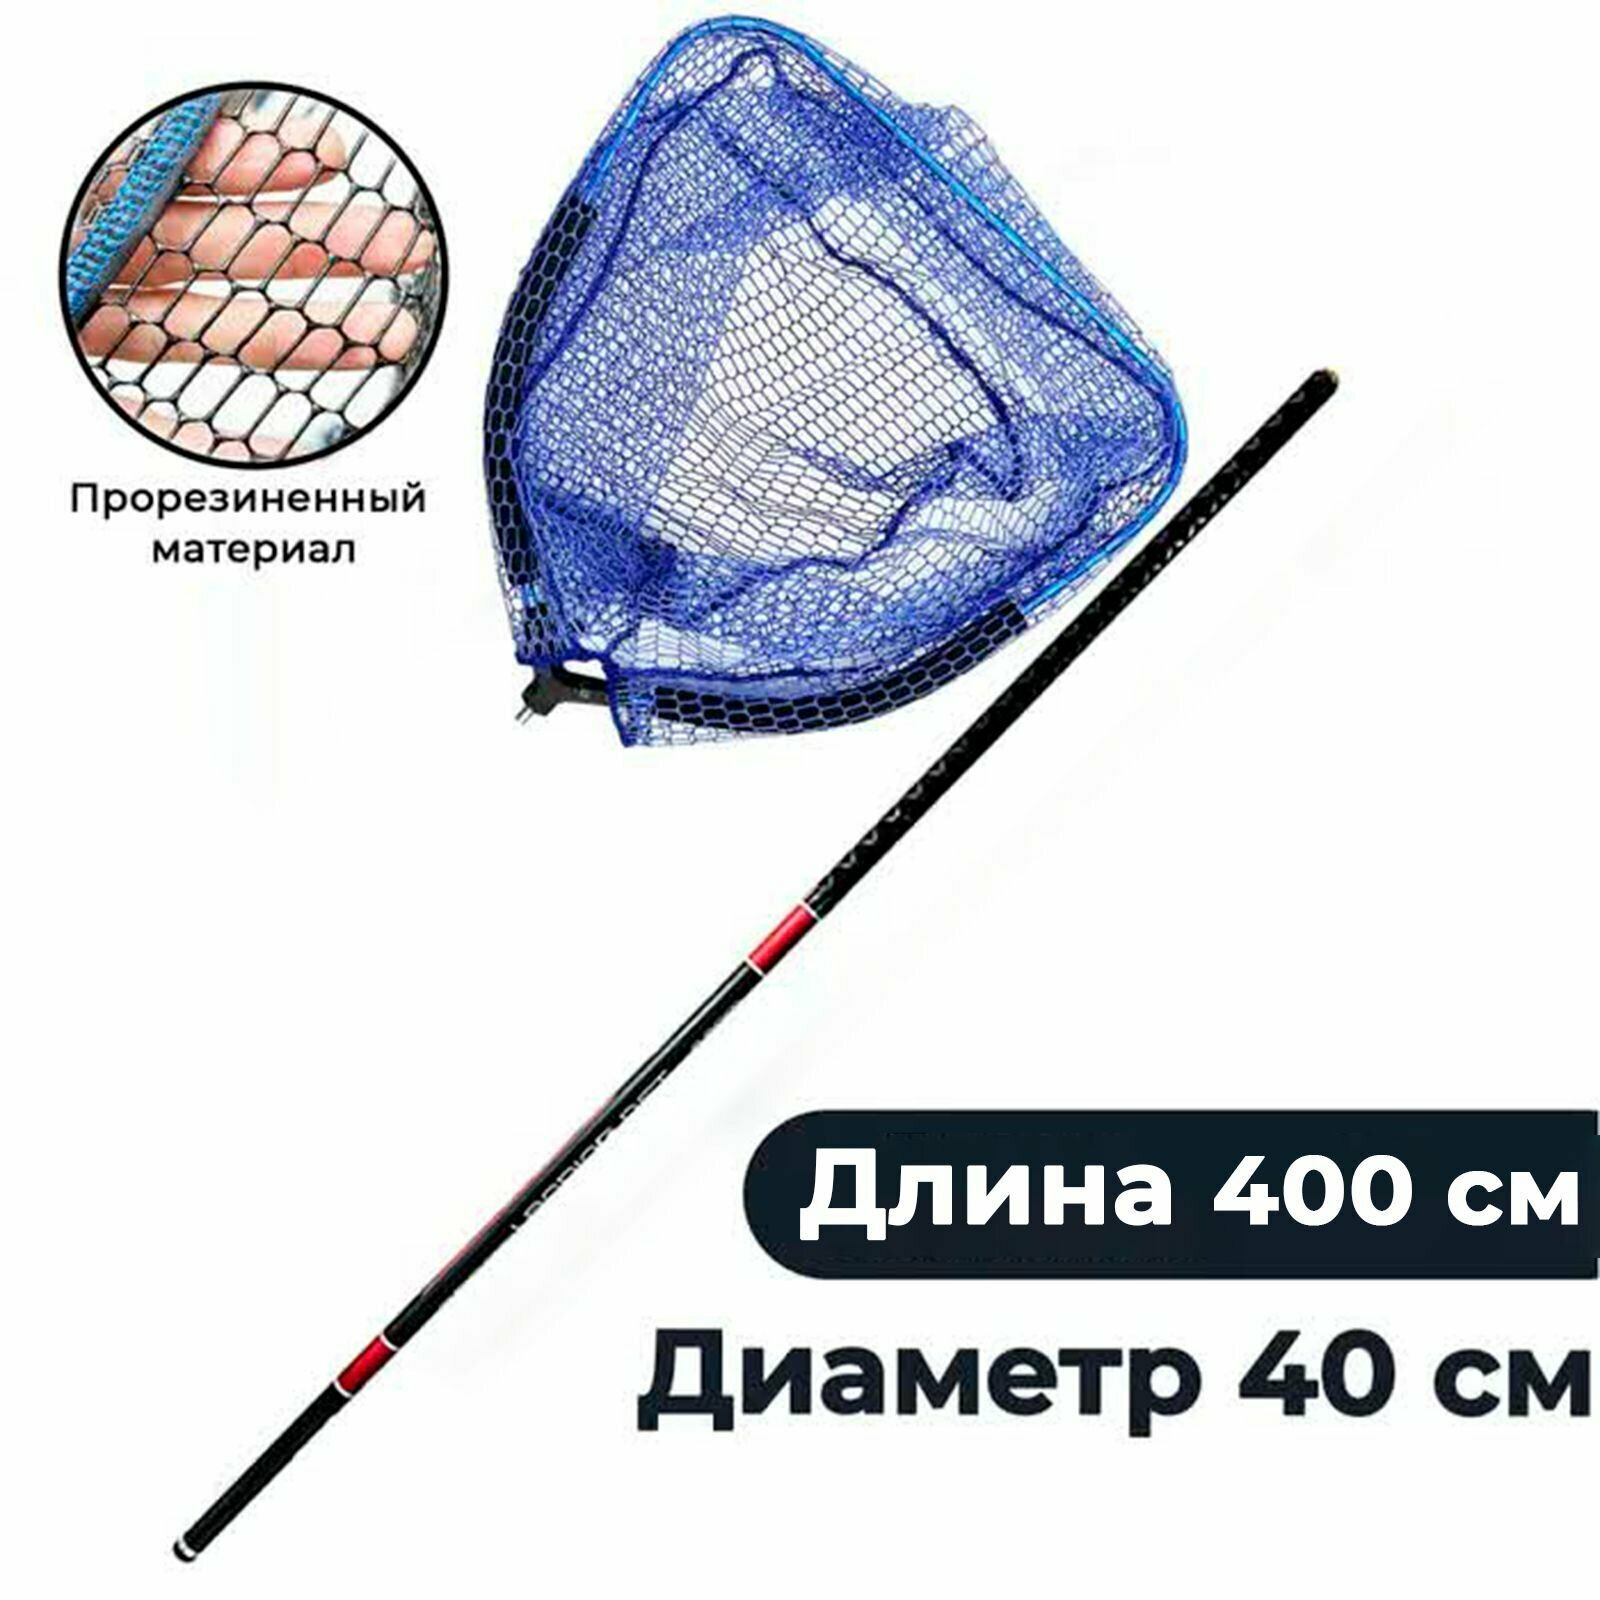 Подсачек плавающий рыболовный 40 на 40 см с карбоновой ручкой до 4 м.